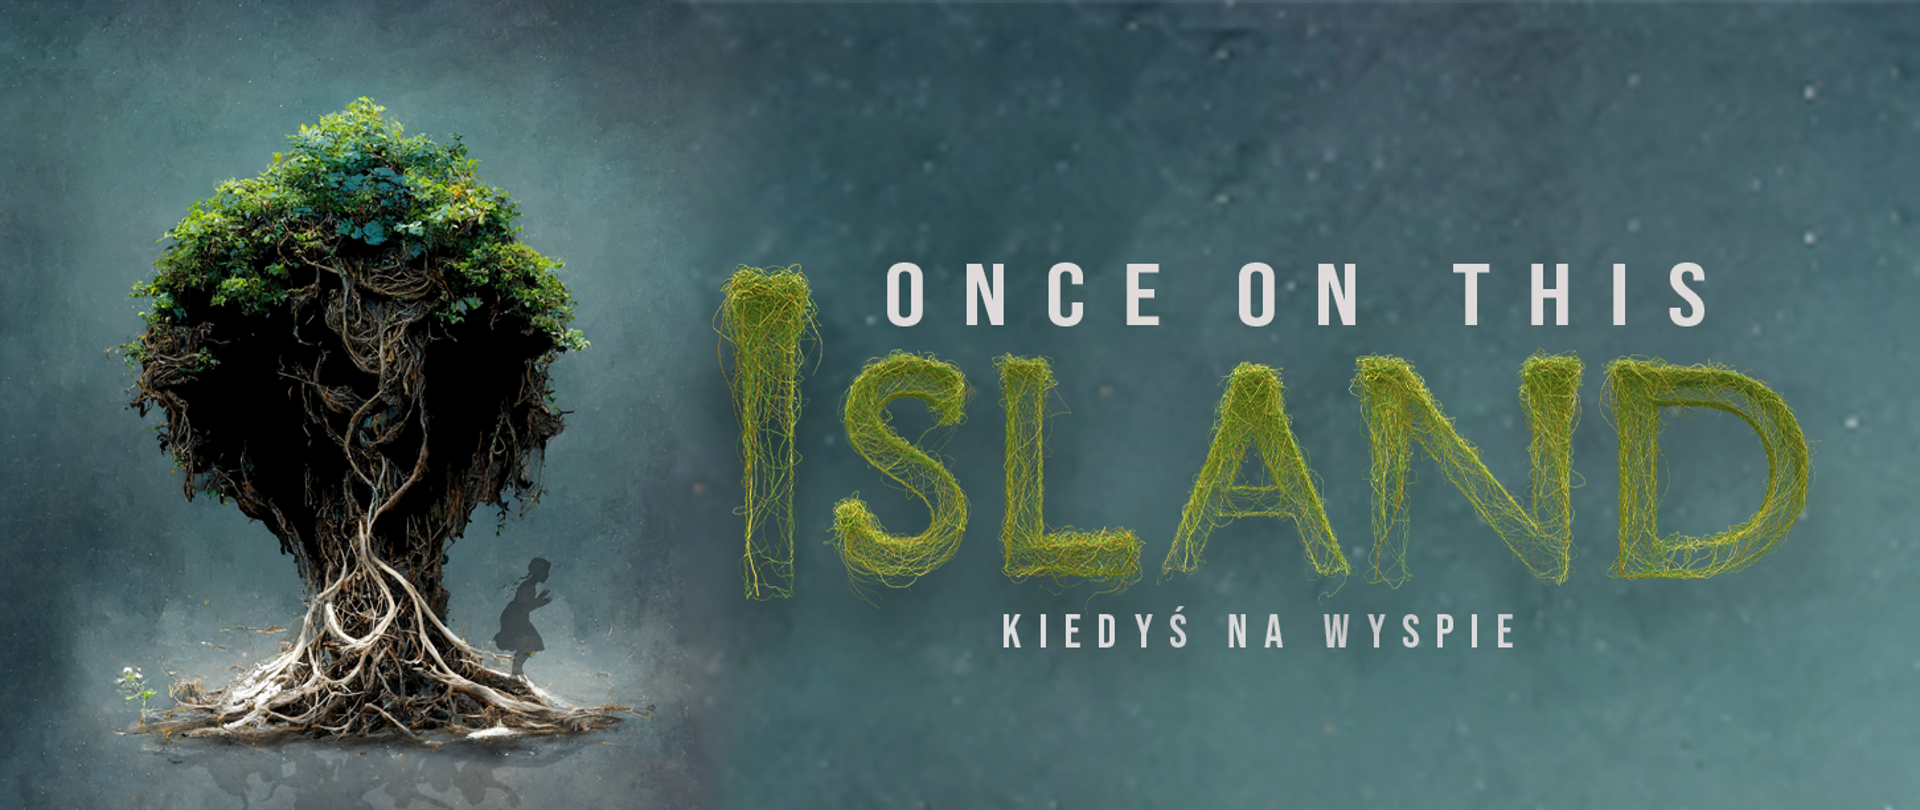 Baner spektaklu . Na szaro-zielono-niebieskim tle po lewej drzewo z wyeksponowanymi korzeniami, po prawej stronie drzewa cień dziewczynki.
oraz napis "Once on this Island", poniżej napisu tłumaczenie polskie tytułu "Kiedyś na wyspie"